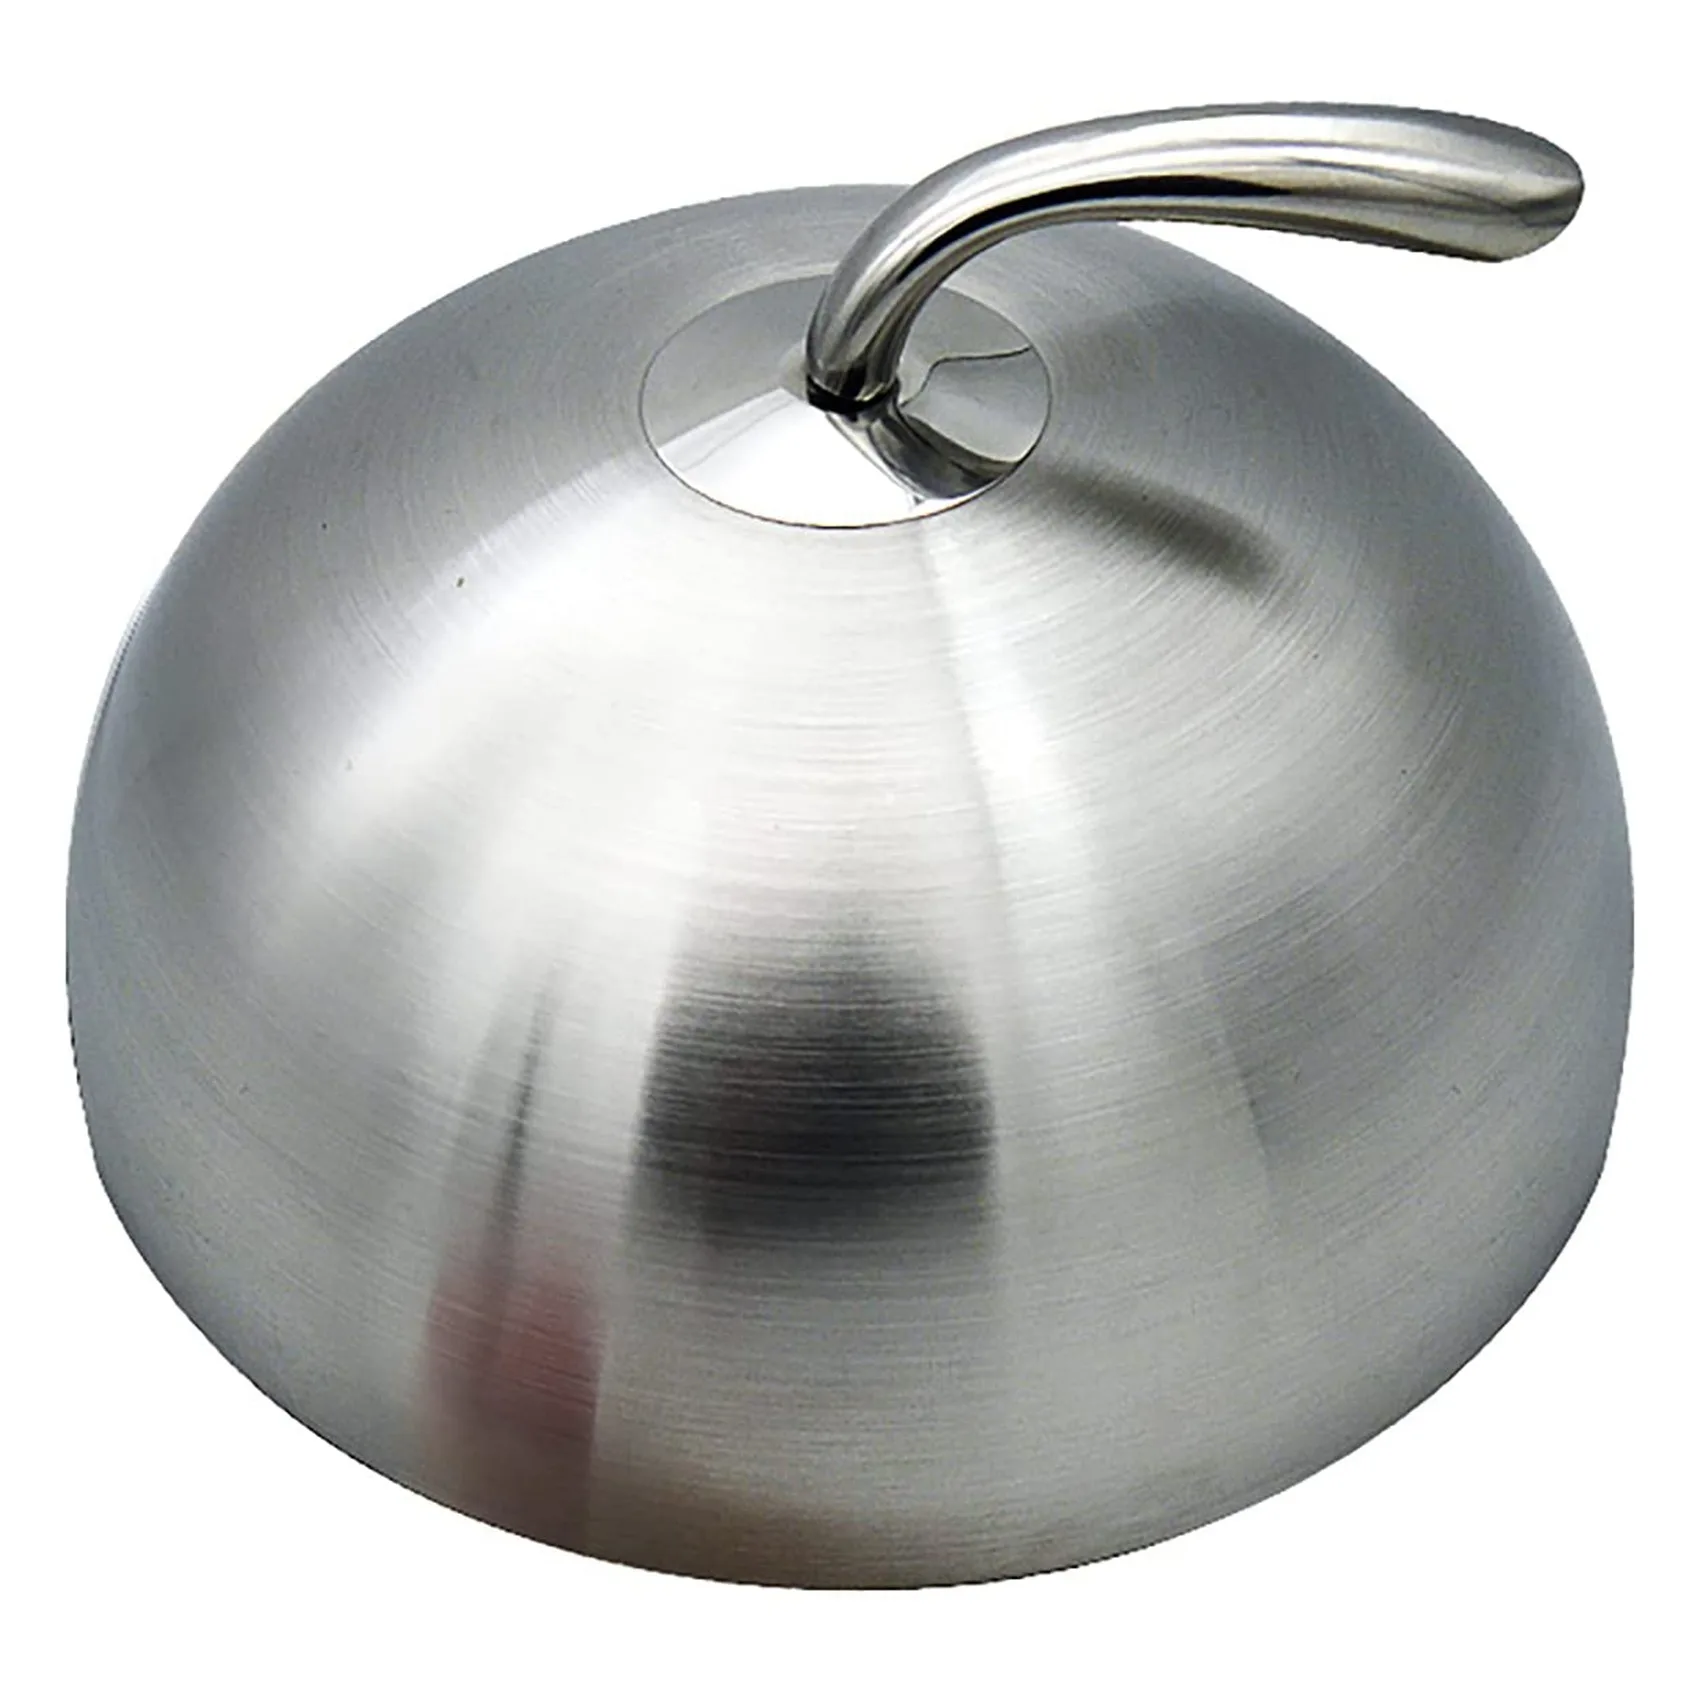 

1 шт. 24 см крышка из нержавеющей стали для стейка купольная крышка для посуды Teppanyaki домашняя круглая маслонепроницаемая Крышка для еды кухонное приготовление